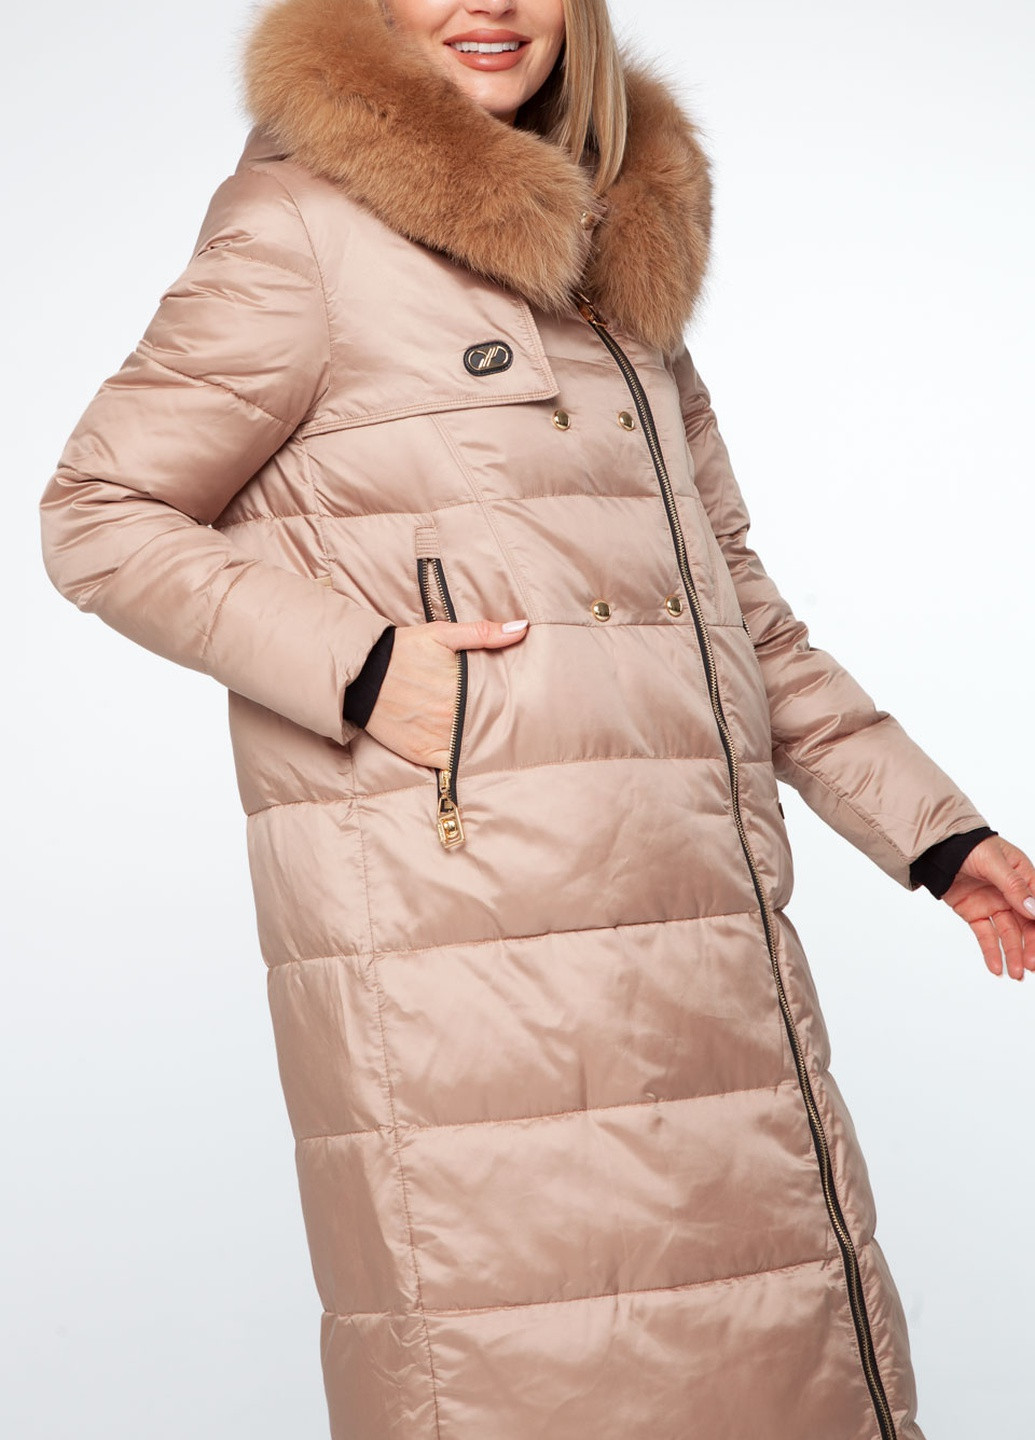 Бежева зимня утеплена куртка з обробкою мехом єноту Vo-tarun 855